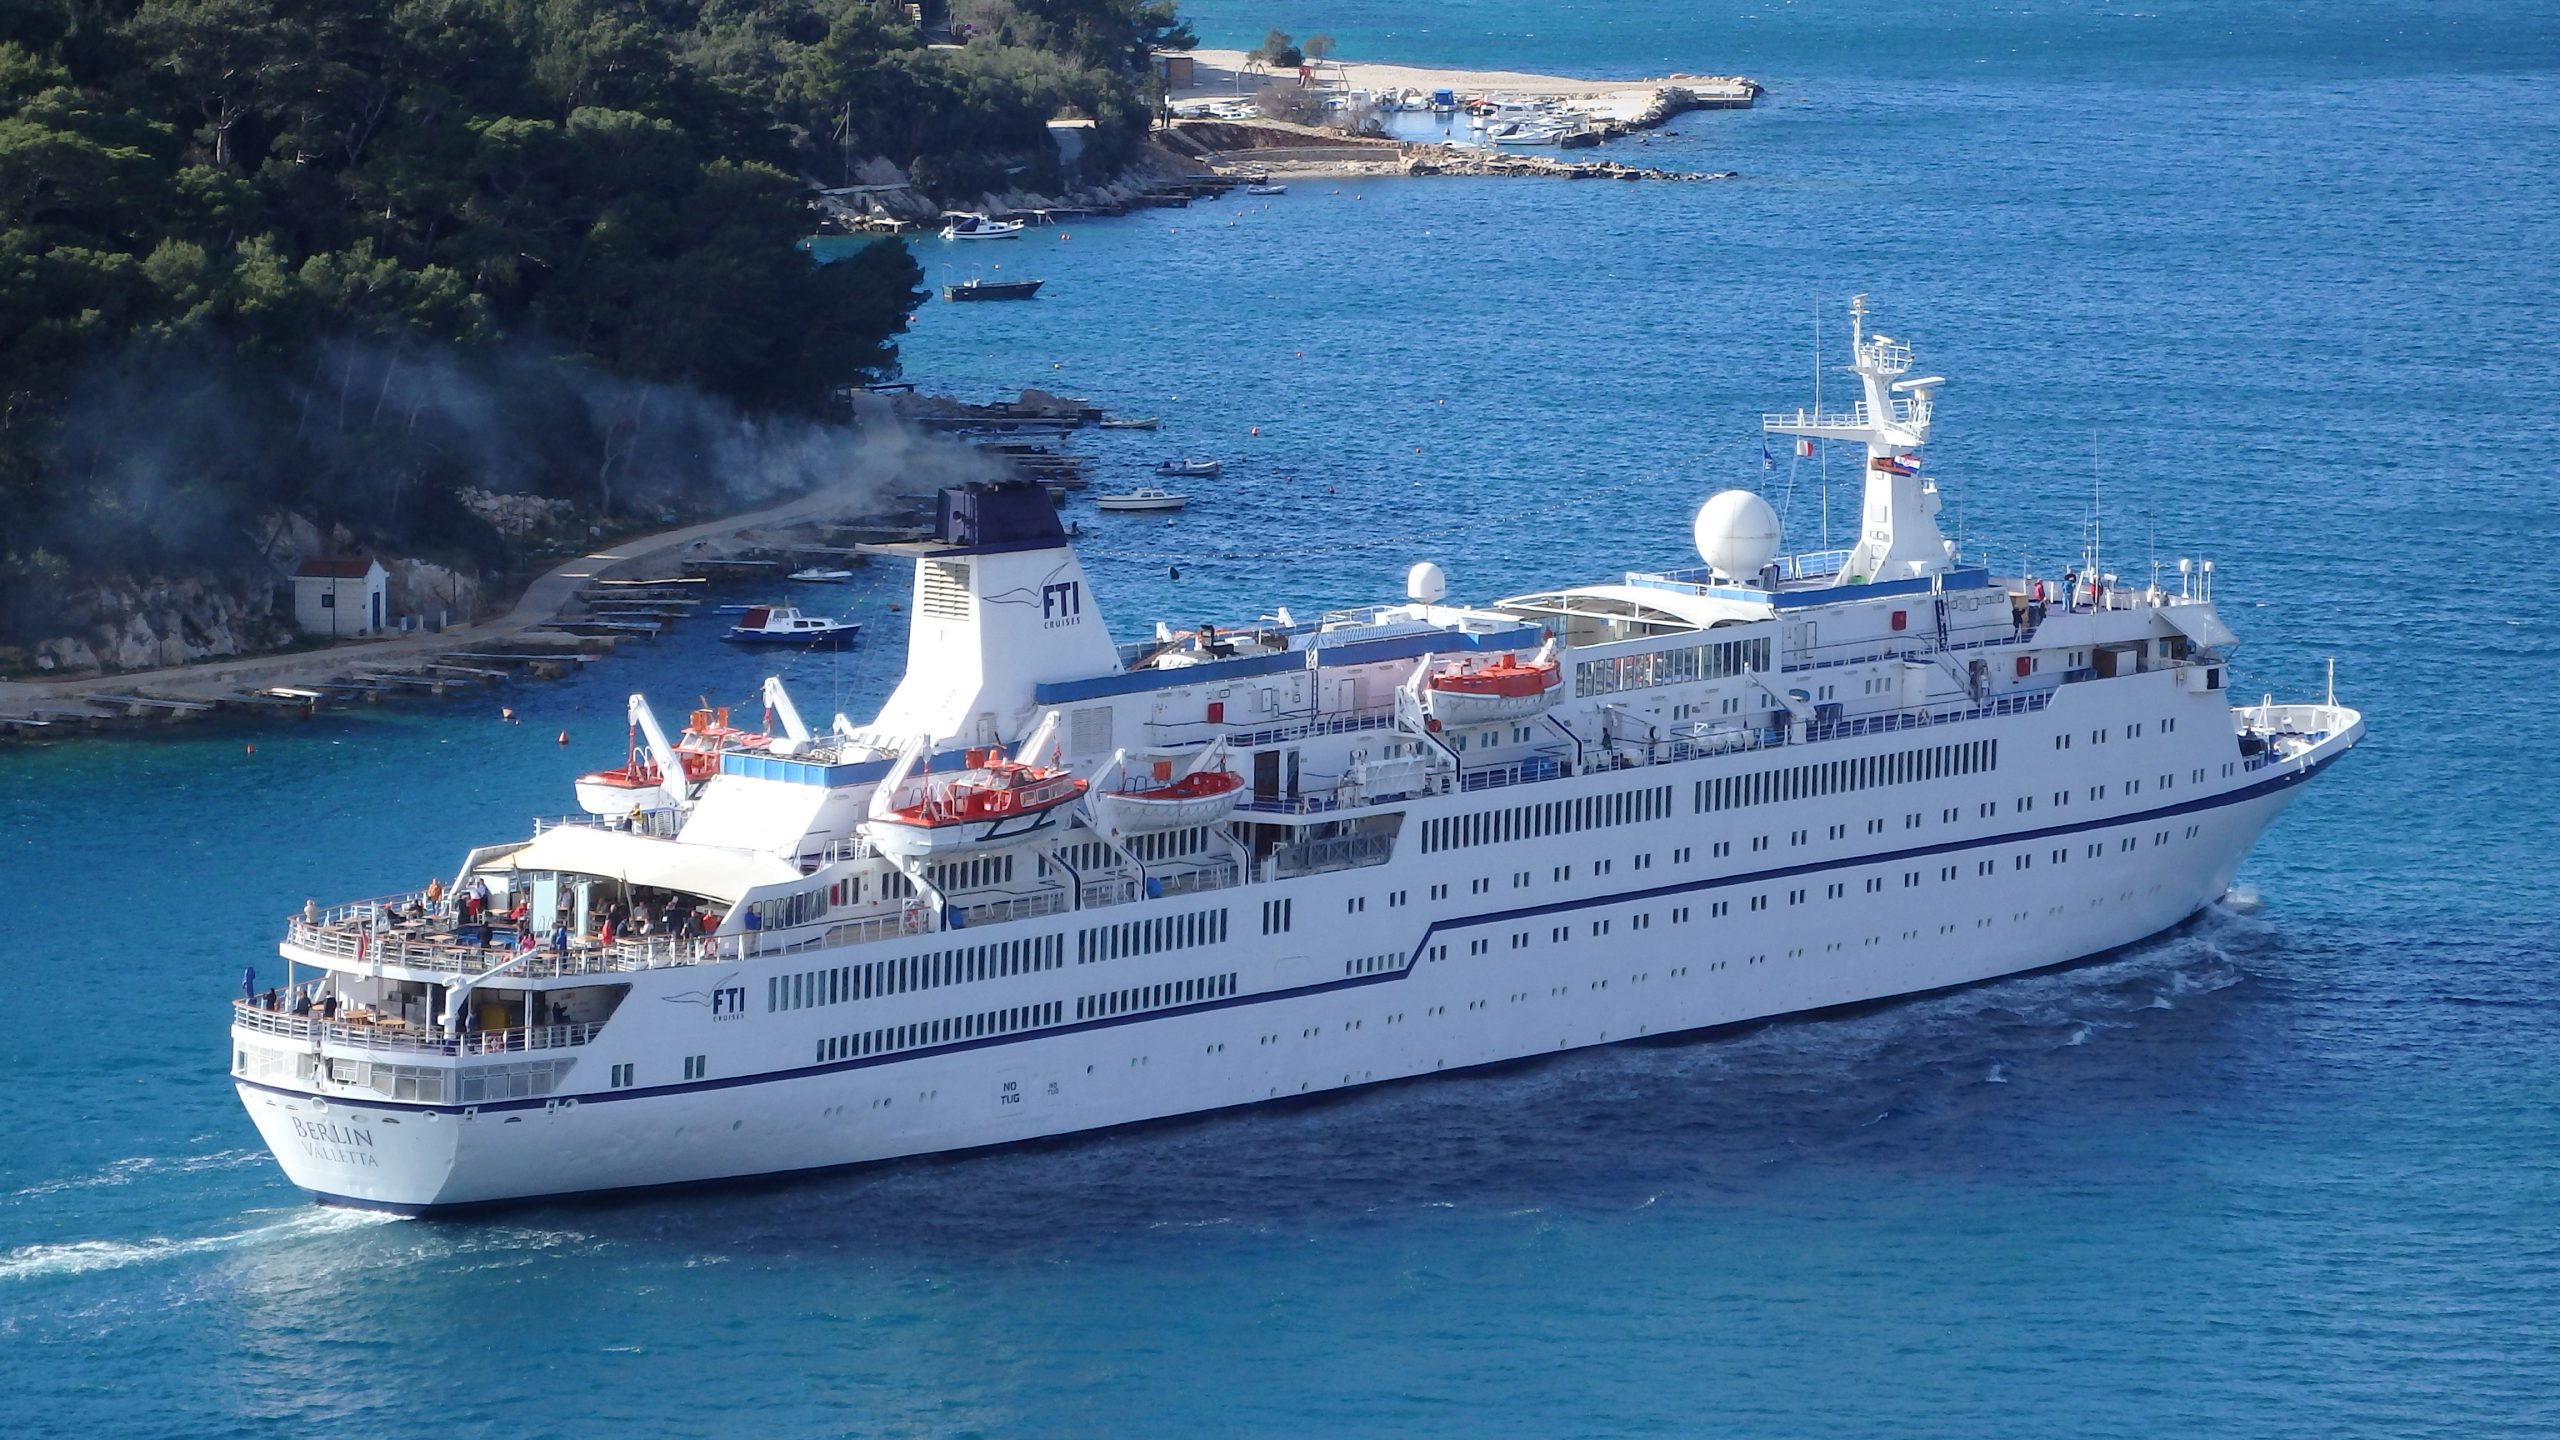 Die MS Berlin, einstiges ZDF-Traumschiff ist von FTI CRUISES verkauft worden. Das Kreuzfahrtschiff ging an Dreamliner Cruises